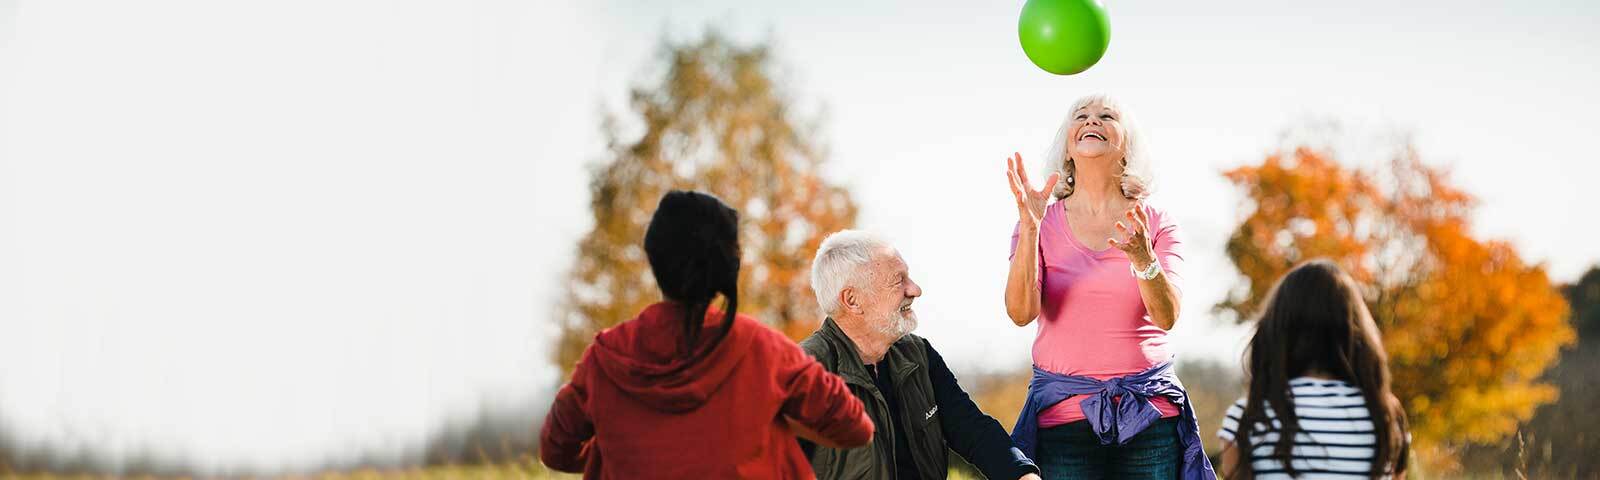 Koordination: Ältere Dame wirft grünen Ball in die Luft